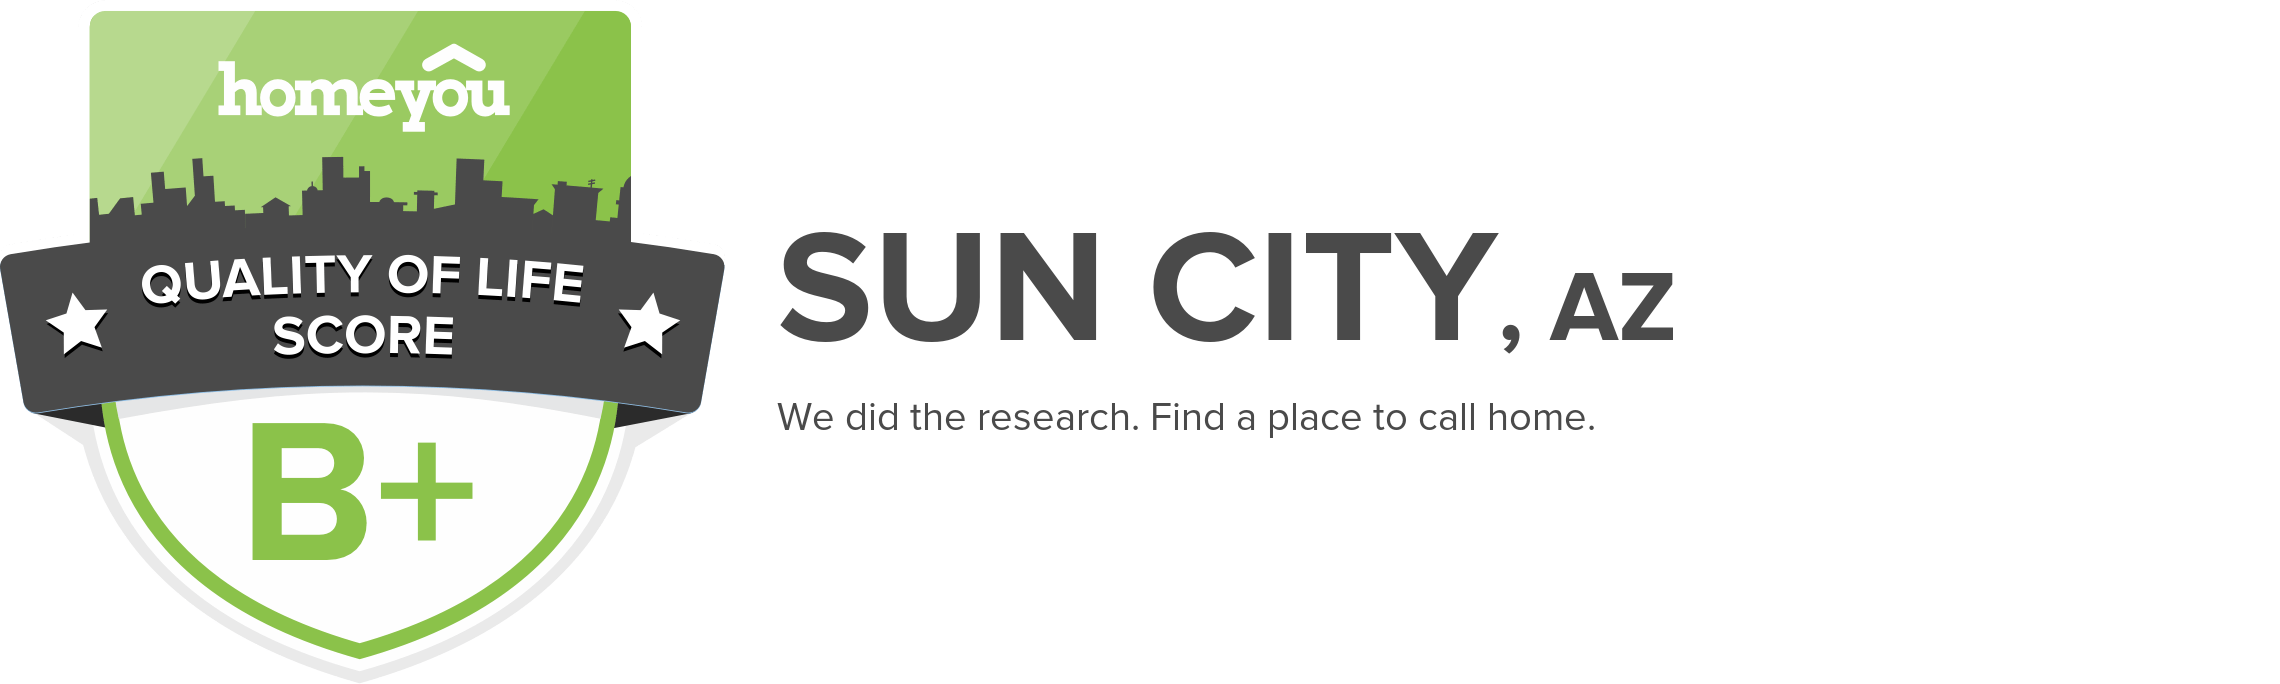 Sun City, AZ